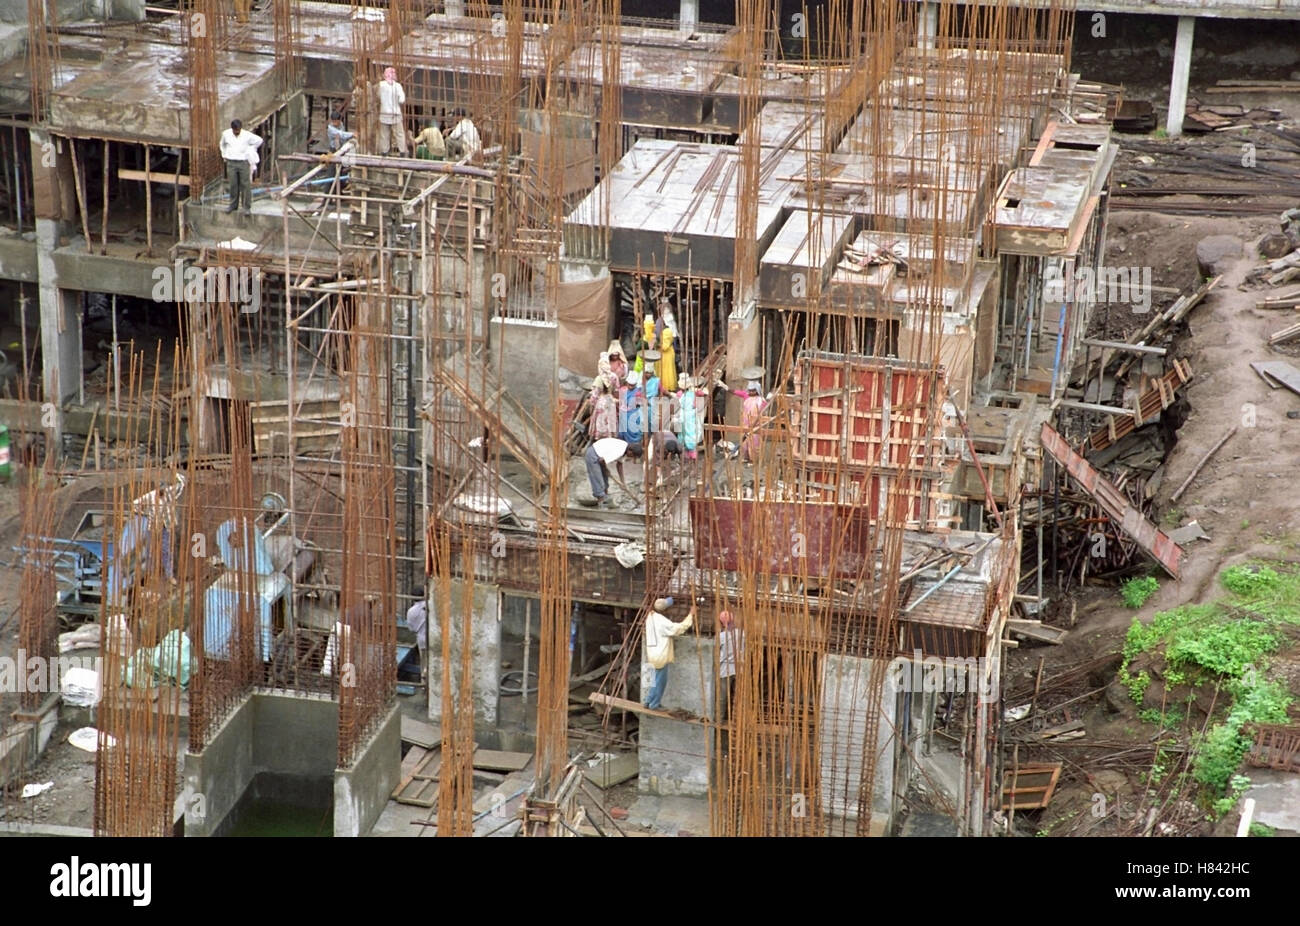 A construction site, Maharashtra, India Stock Photo